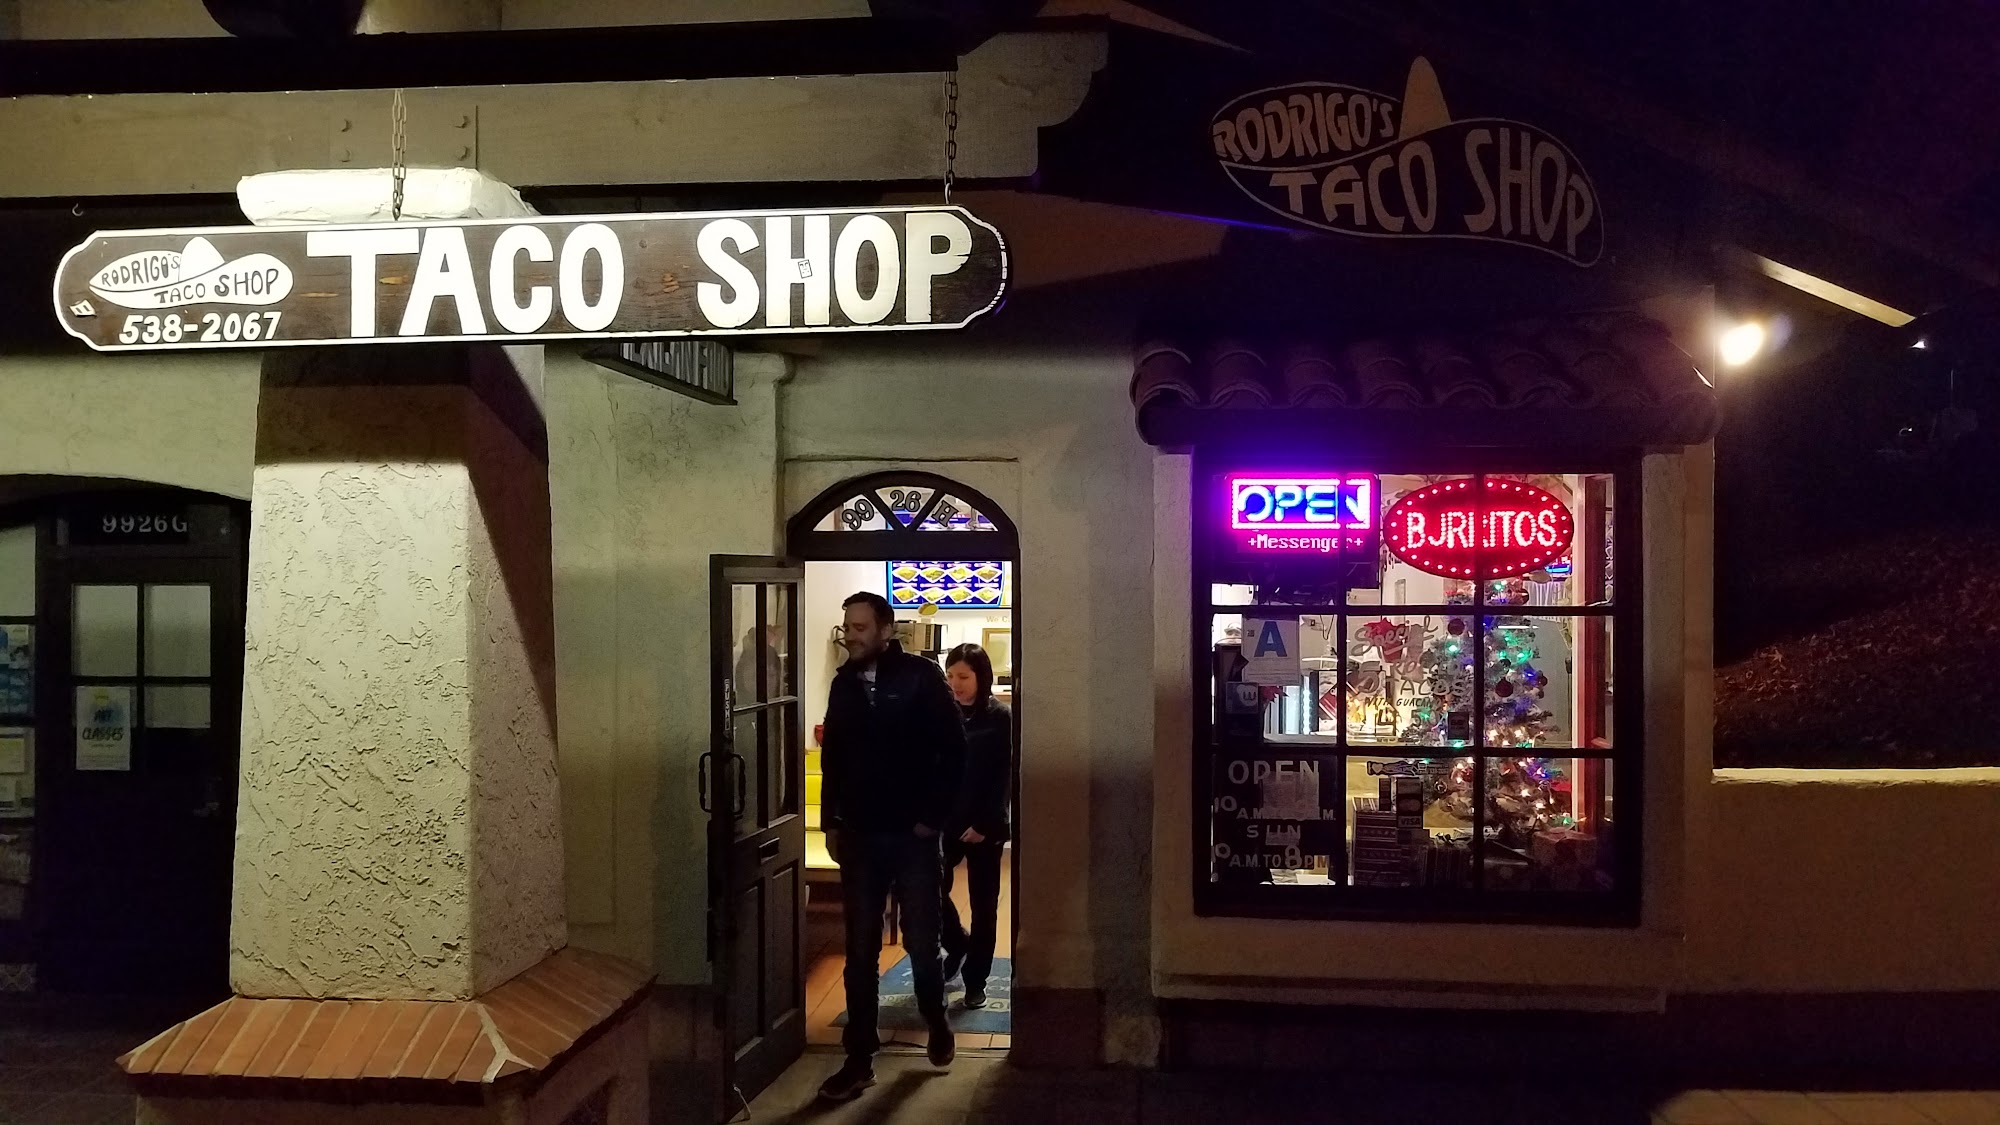 Rodrigo's Taco Shop